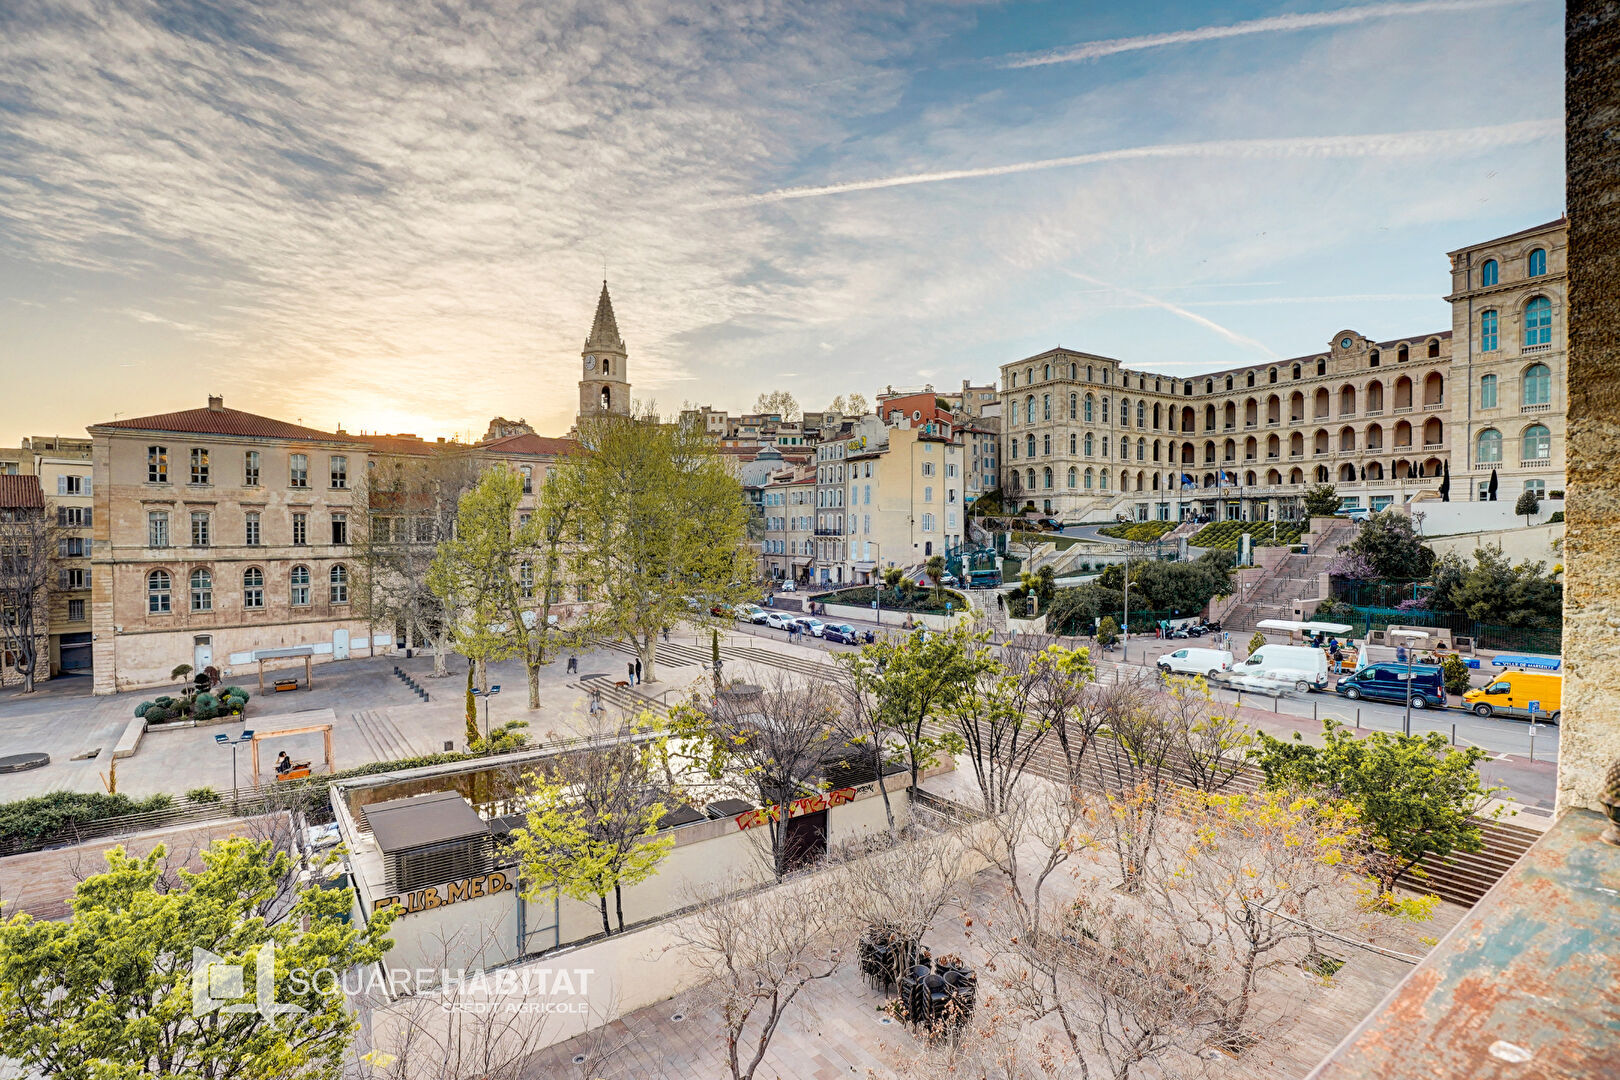 Agence immobilière de Square Habitat Marseille Vieux Port